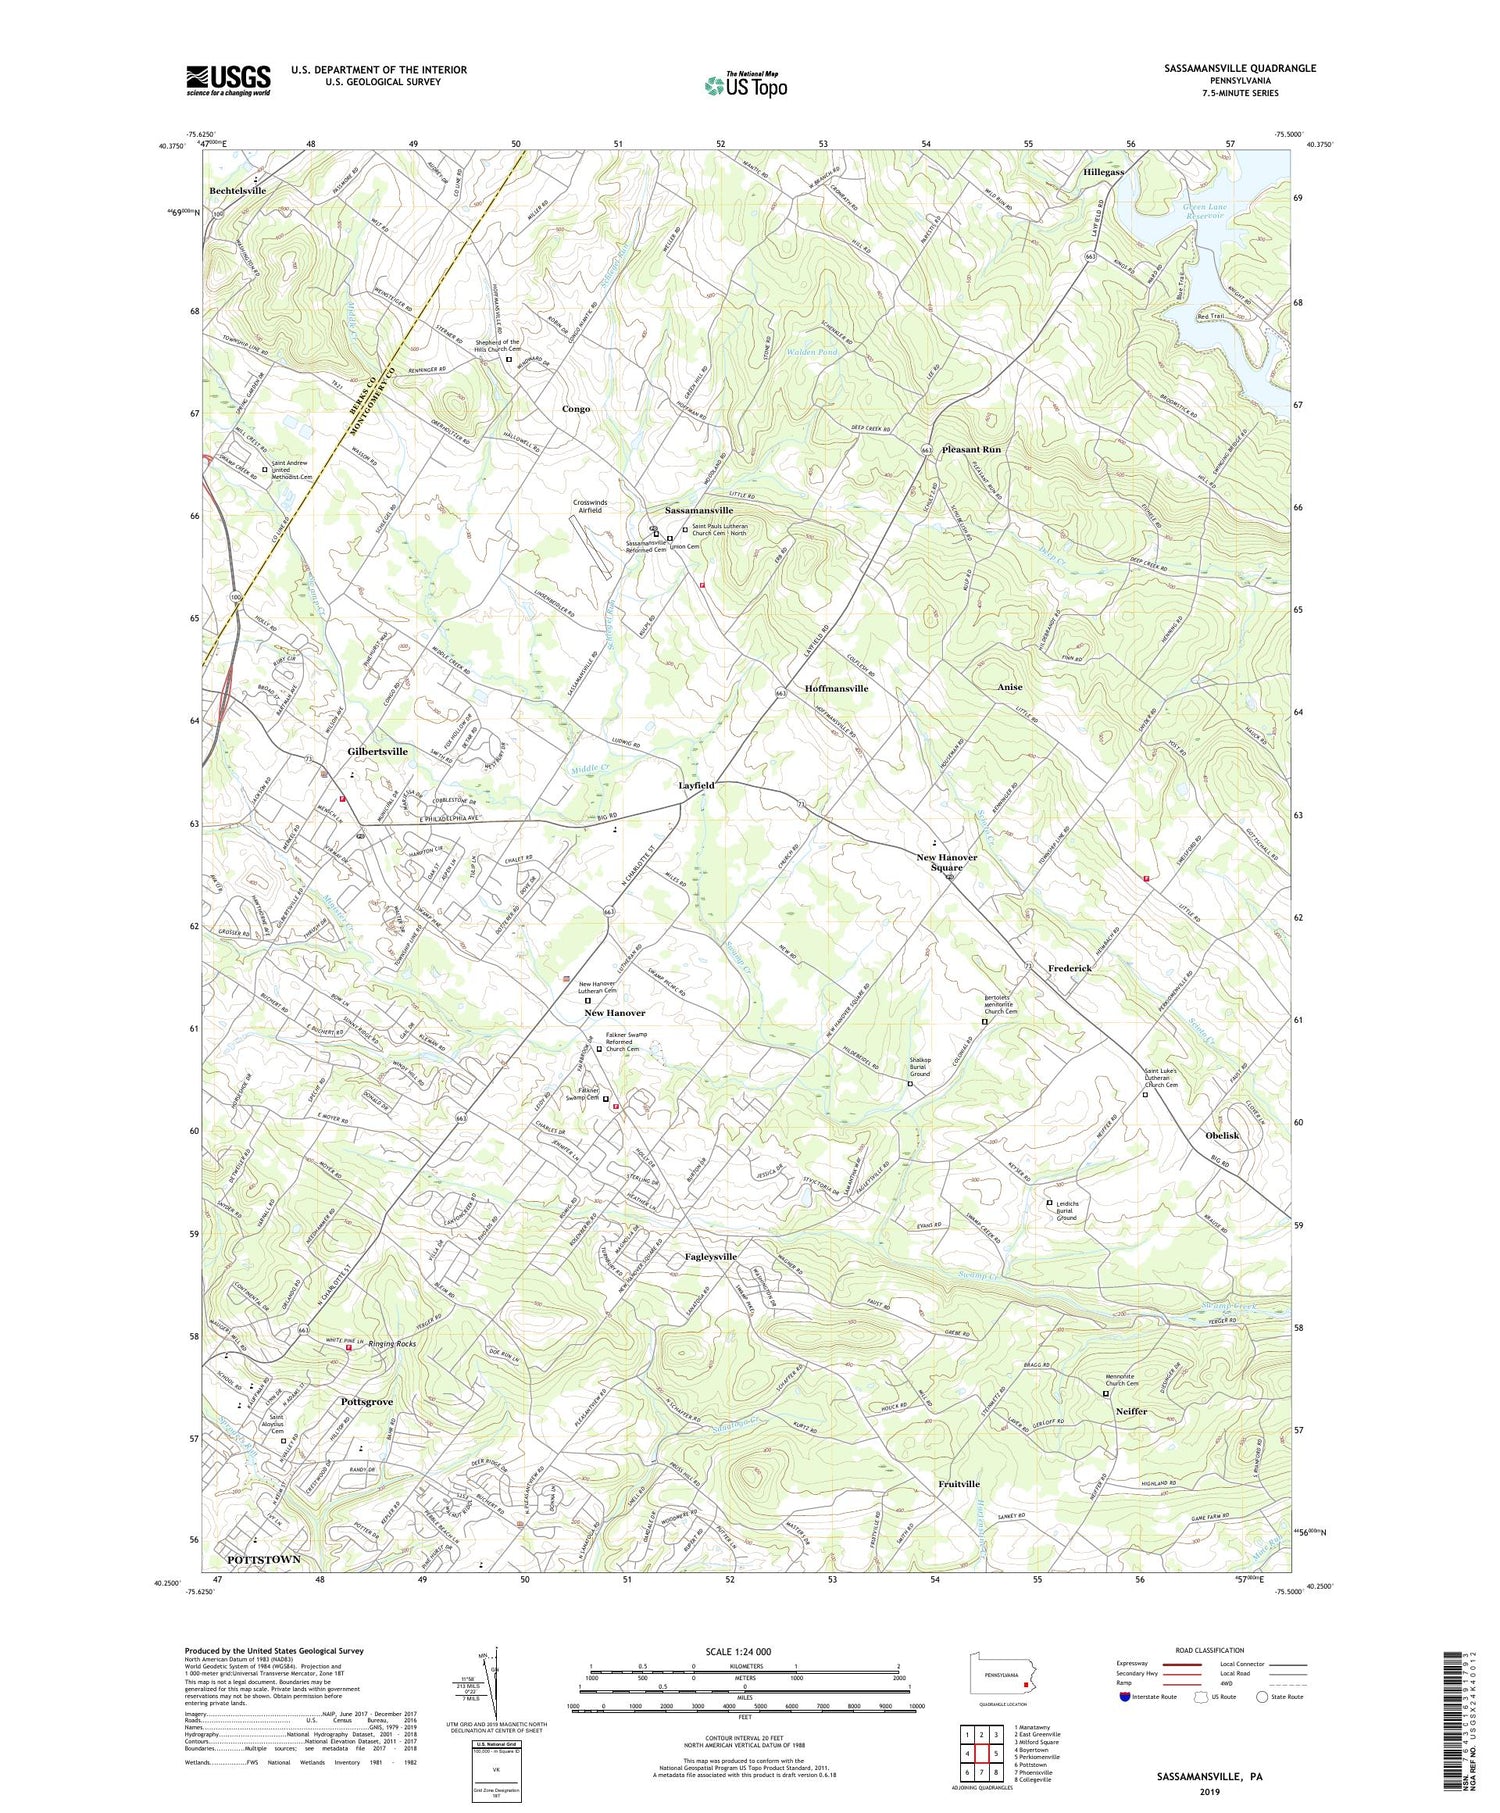 Sassamansville Pennsylvania US Topo Map Image